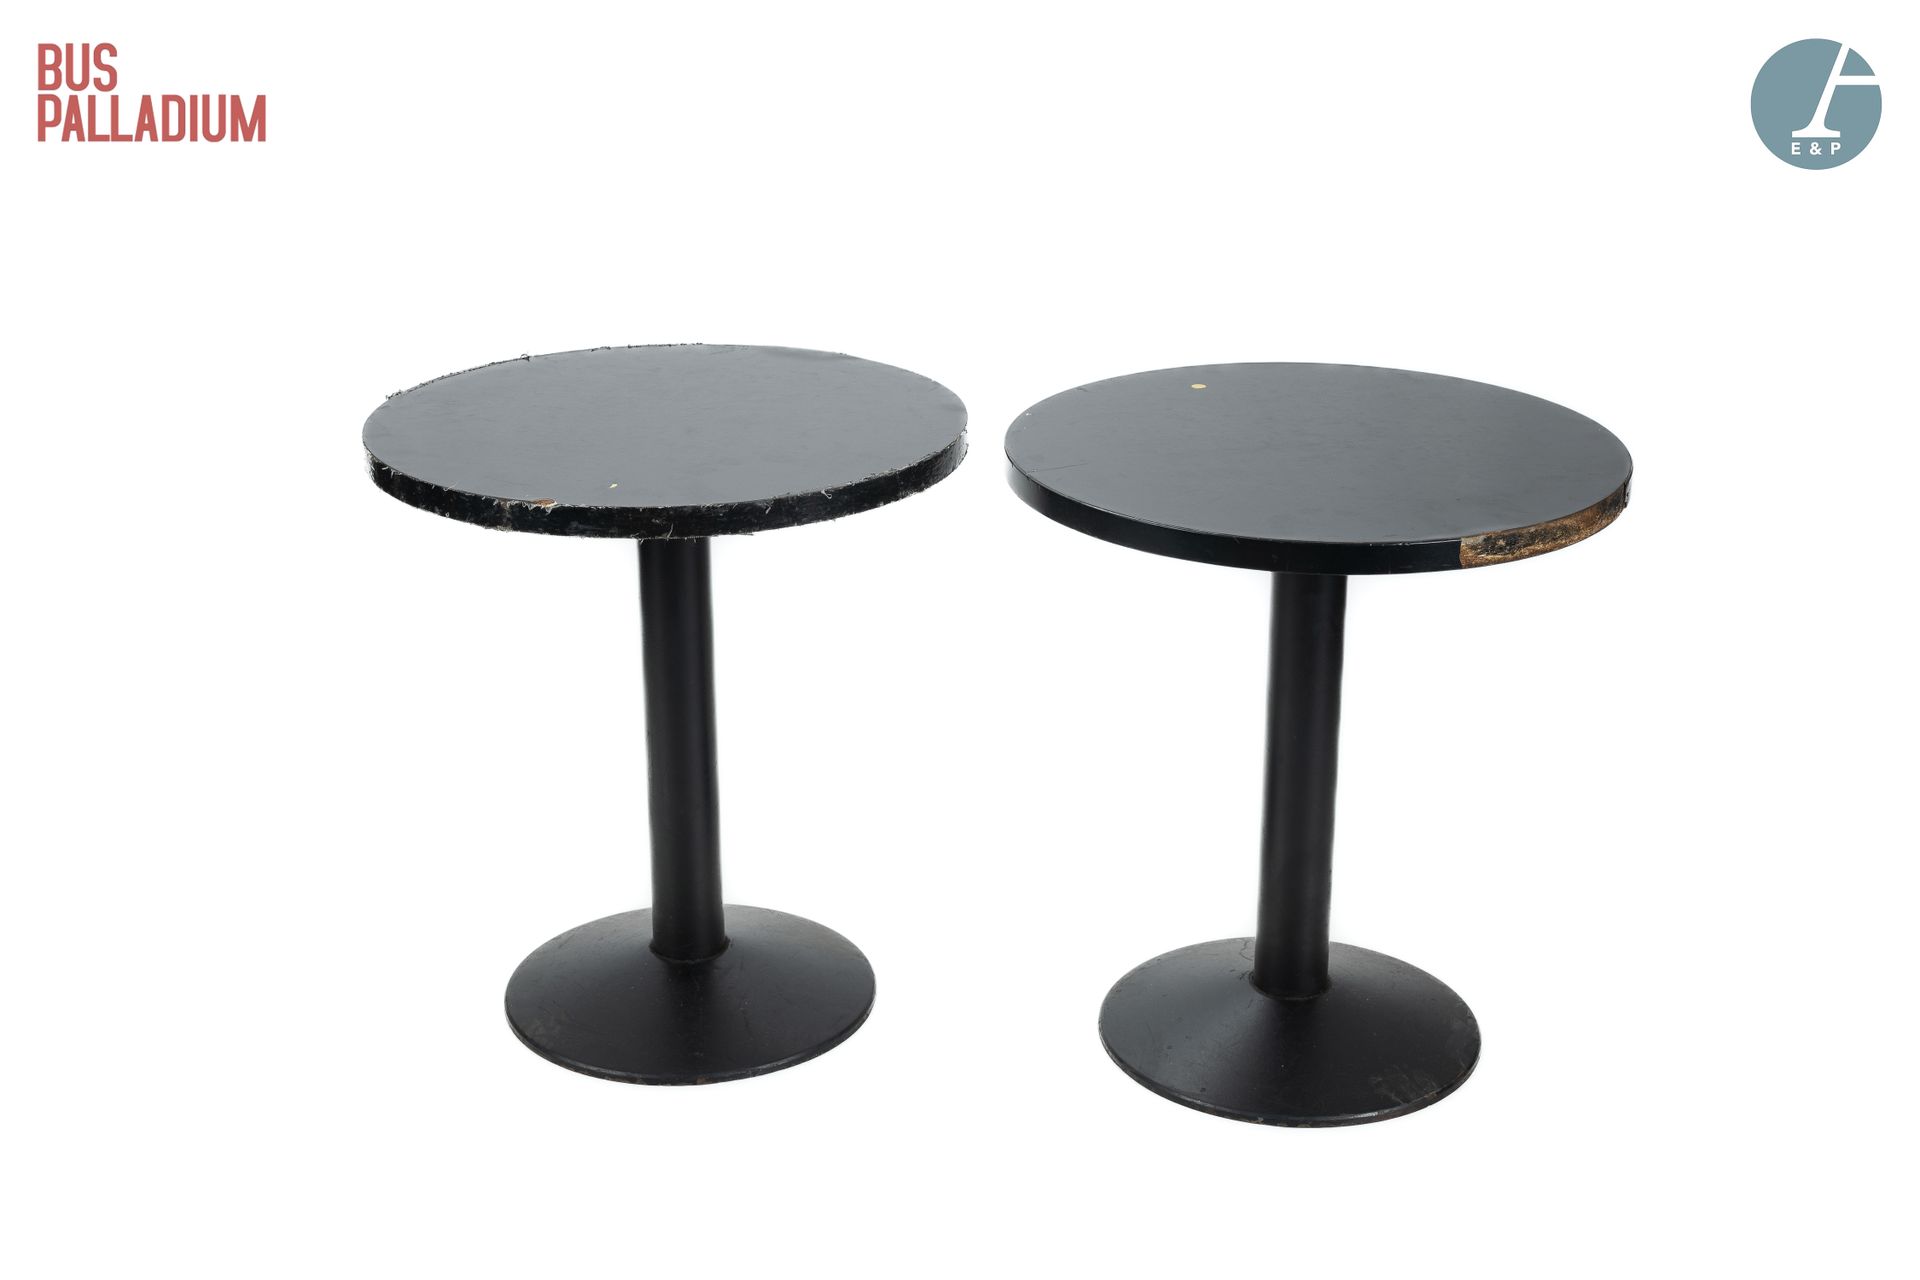 Null 从Palladium巴士出发

两张圆桌，黑色胶合板桌面，铸铁底座 

高：65厘米 - 直径：59.5厘米

一张桌子上有粘合剂的痕迹，顶部有缺口，&hellip;